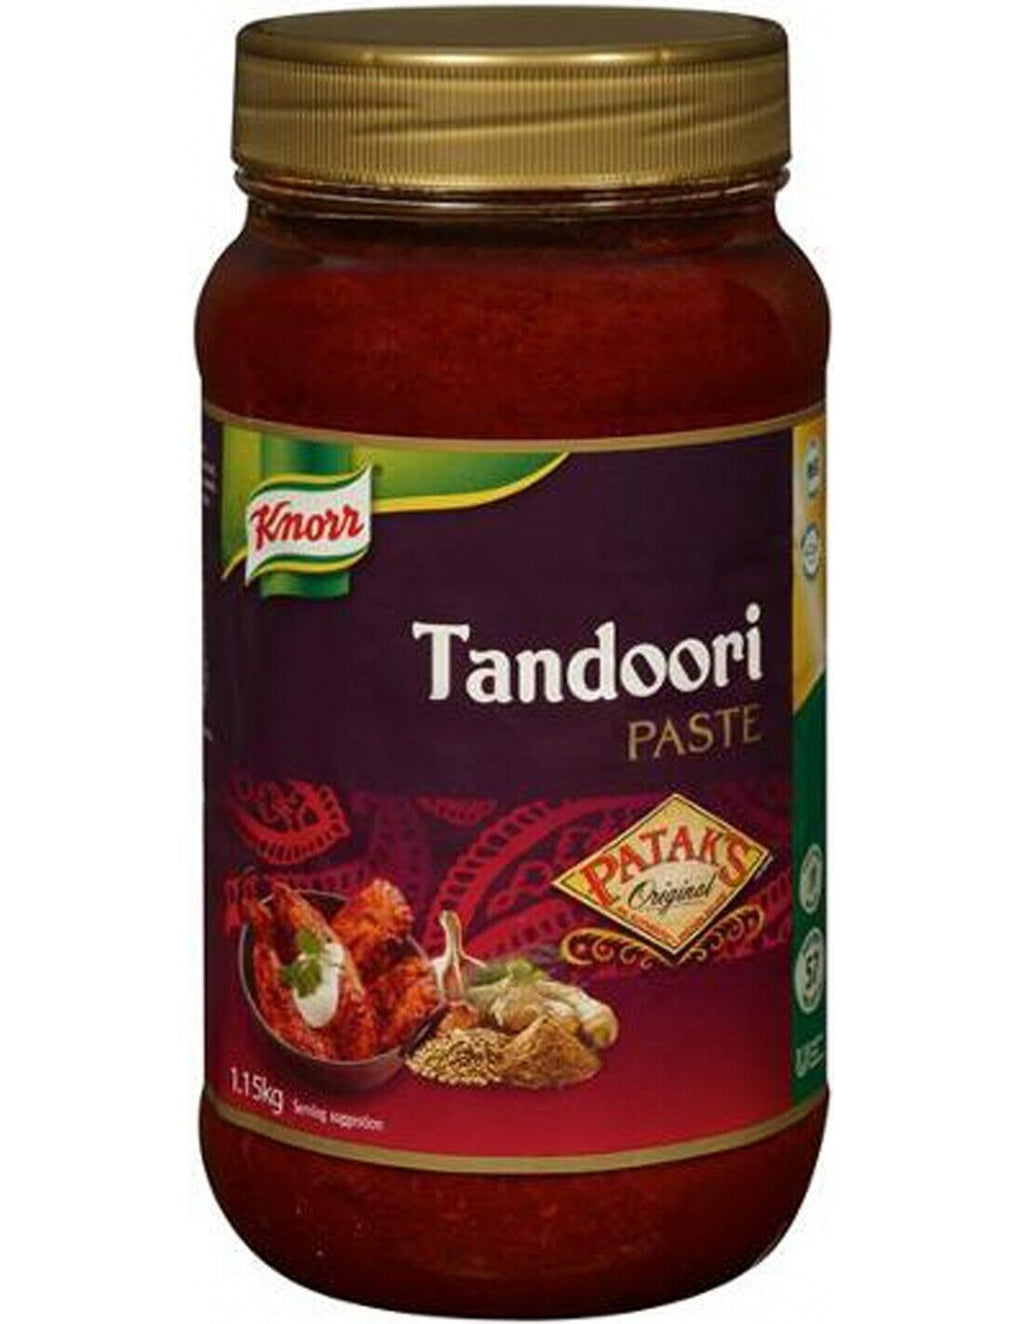 Tandoori Paste 1.15lt Knorr Patak